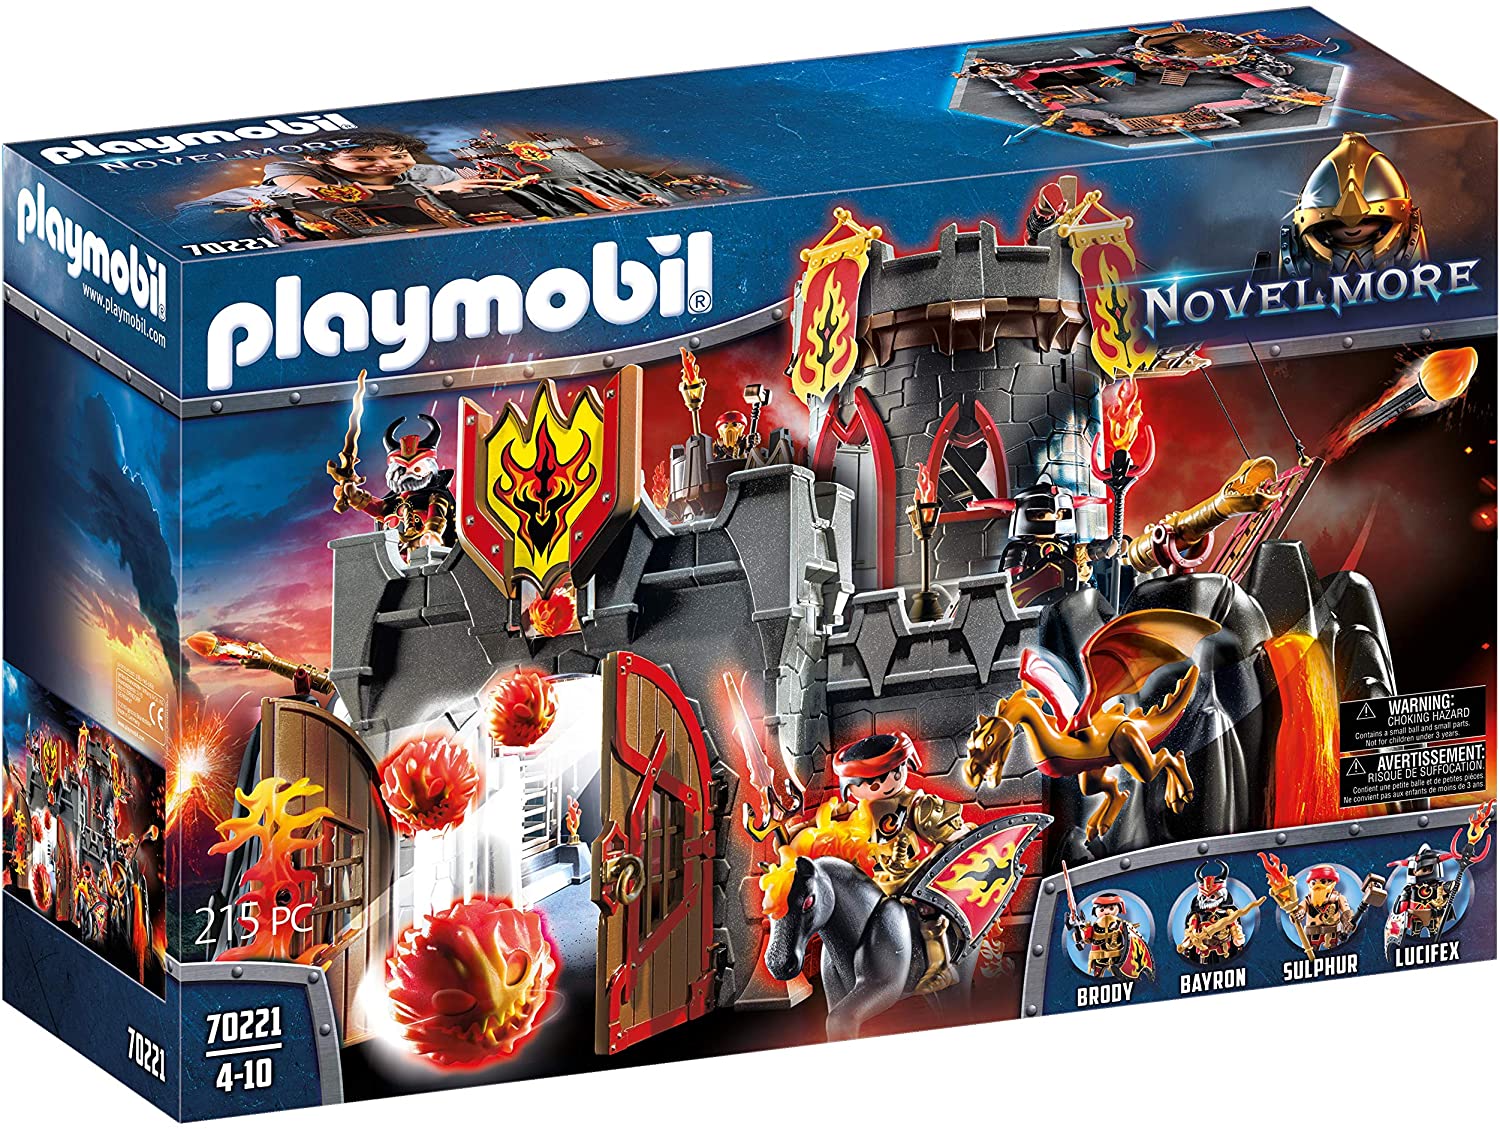 Playmobil Novelmore 70221 Burnham Raiders Fortress, For Children Aged 5-10 